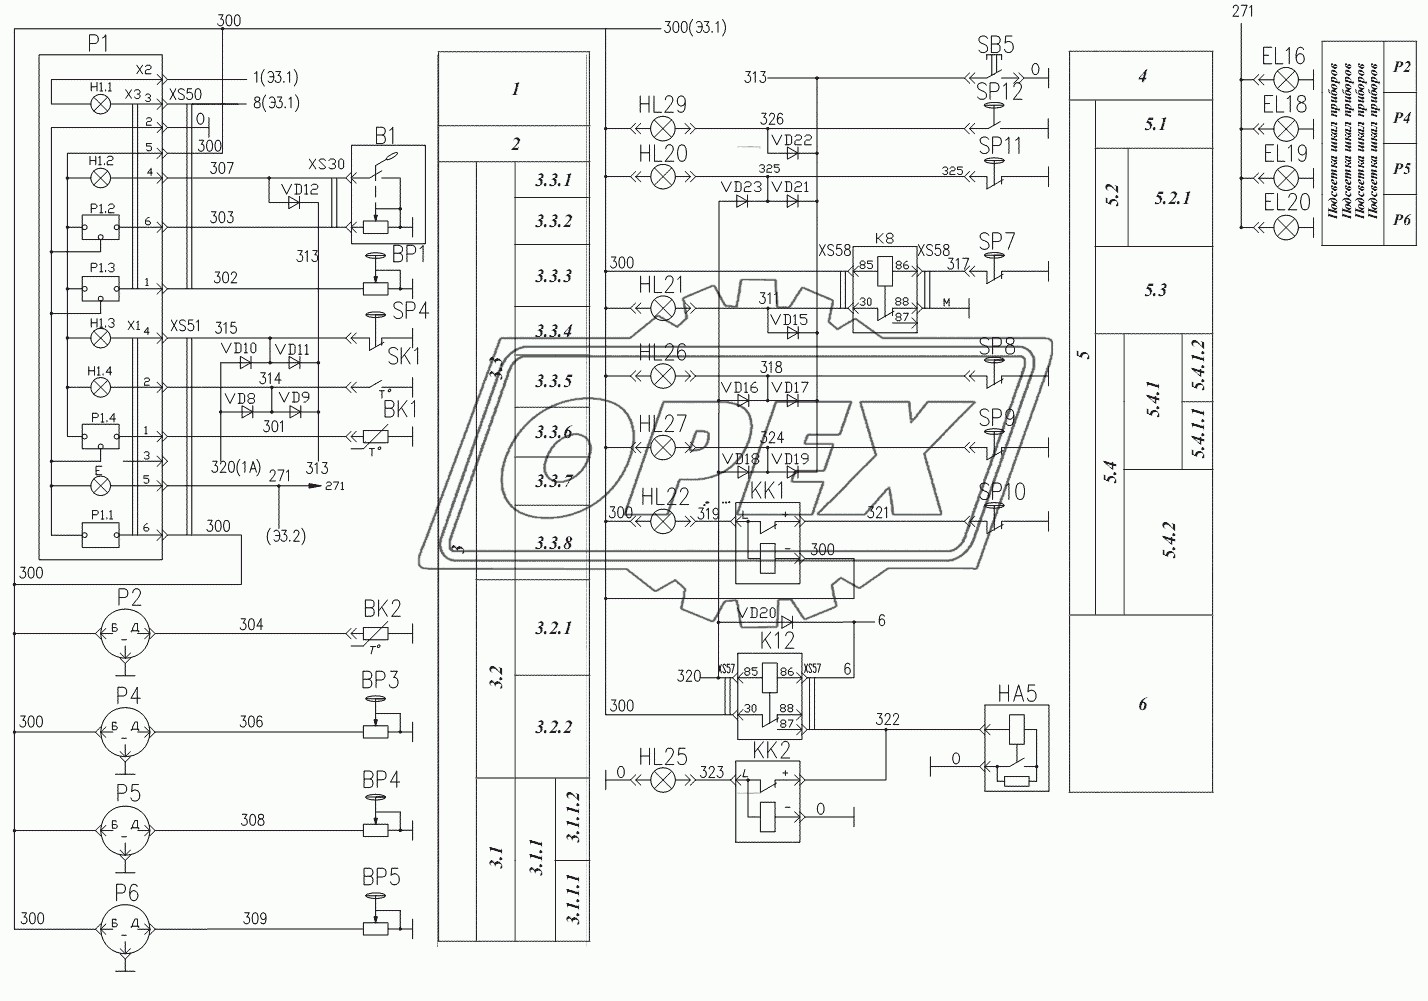 Схема электрическая принципиальная контроля и сигнализации Э3.3 ТО-18Б.81.000 Э3.3